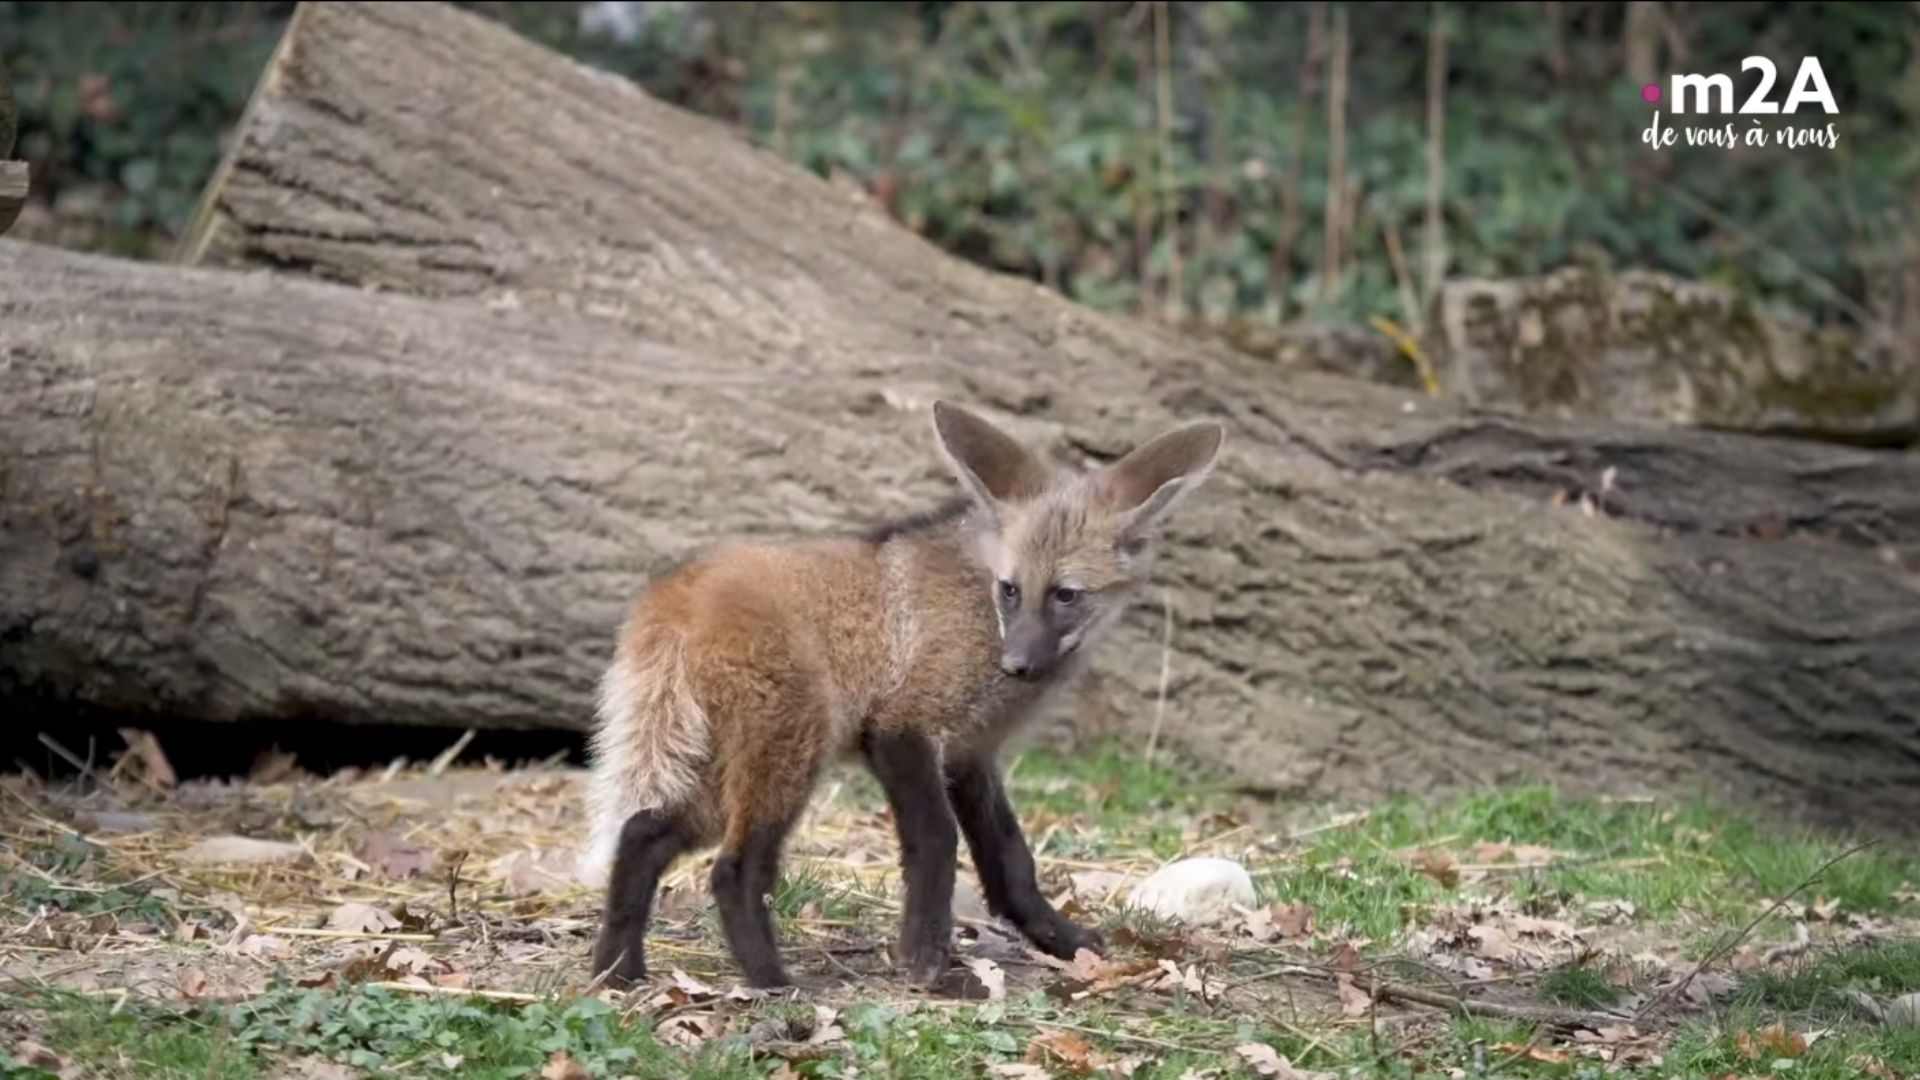  Zoo de mulhouse : naissance loup à crinière